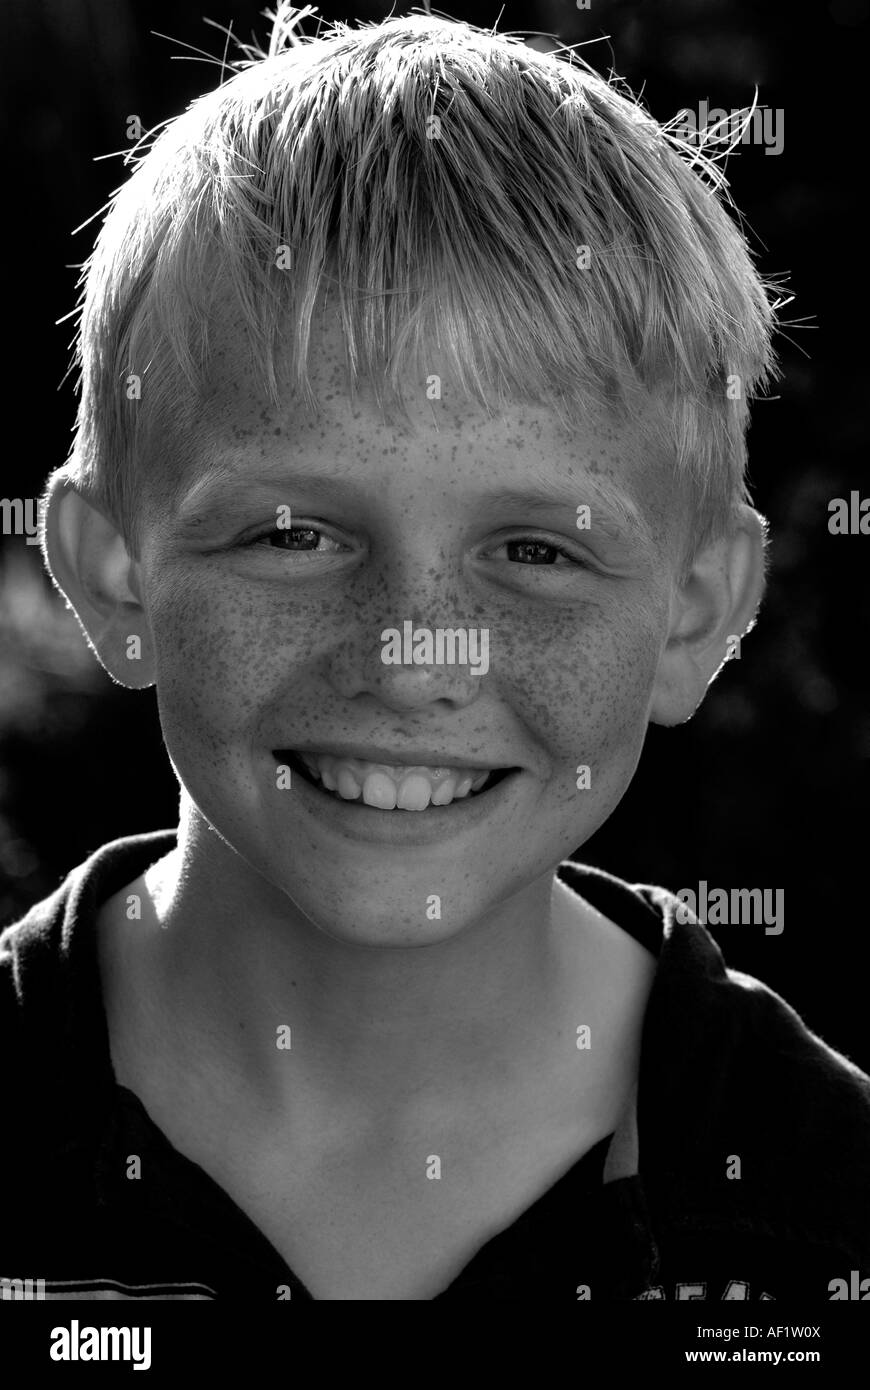 Portrait noir et blanc d'un jeune garçon aux cheveux blonds et aux taches de rousseur Banque D'Images